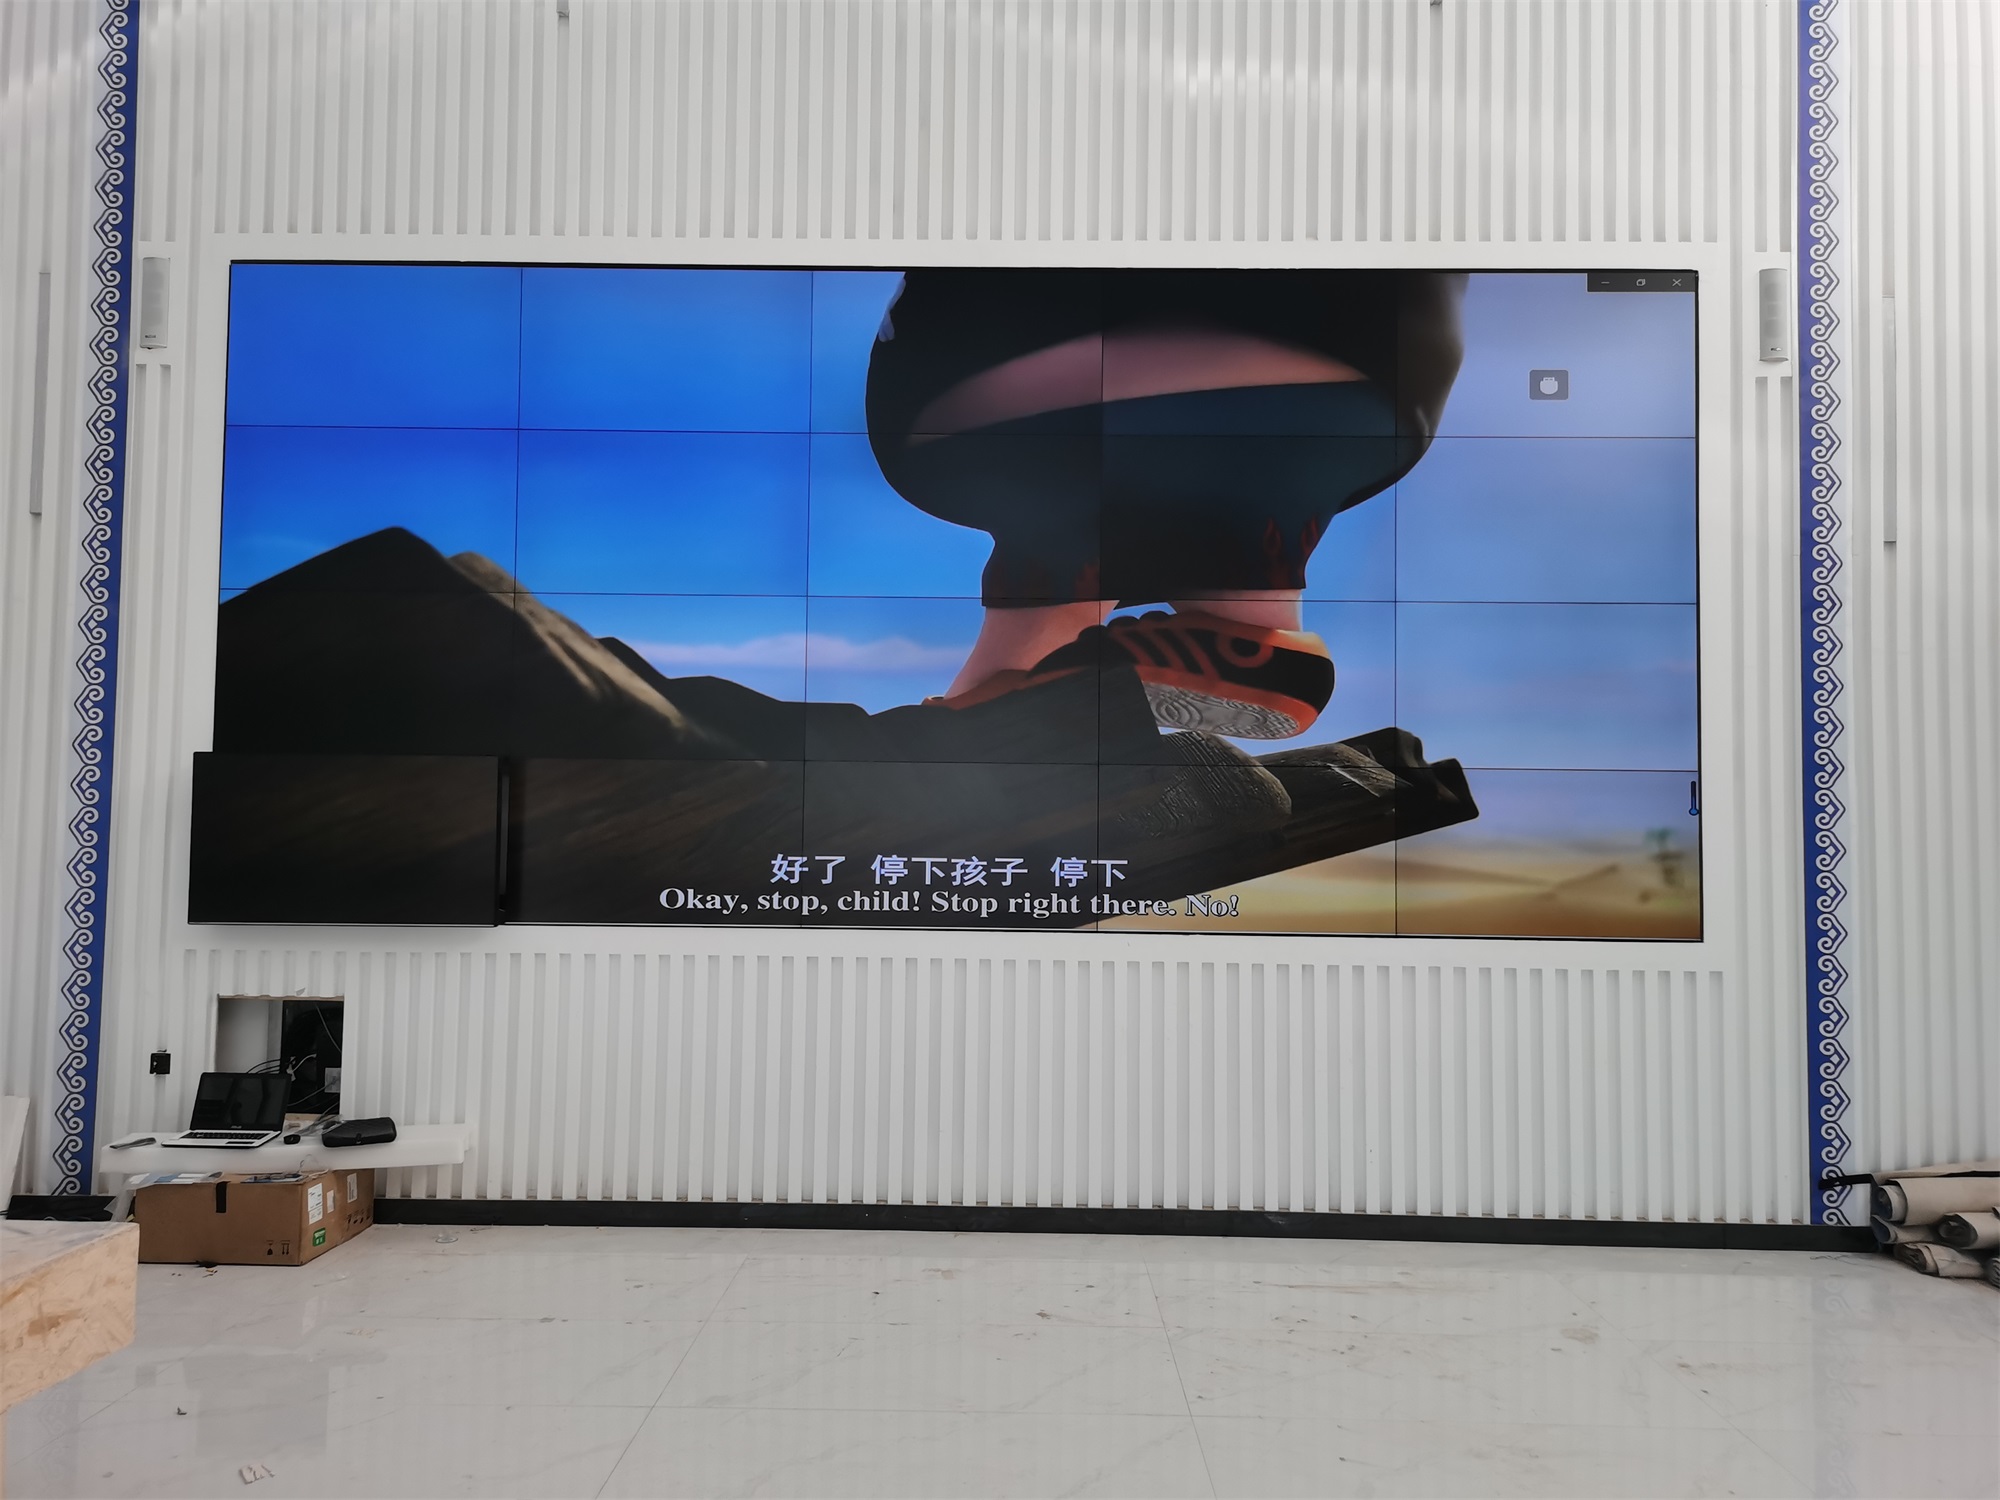 蒙牛牧场展厅55寸0.88mm4X5液晶拼接屏展示案例图片